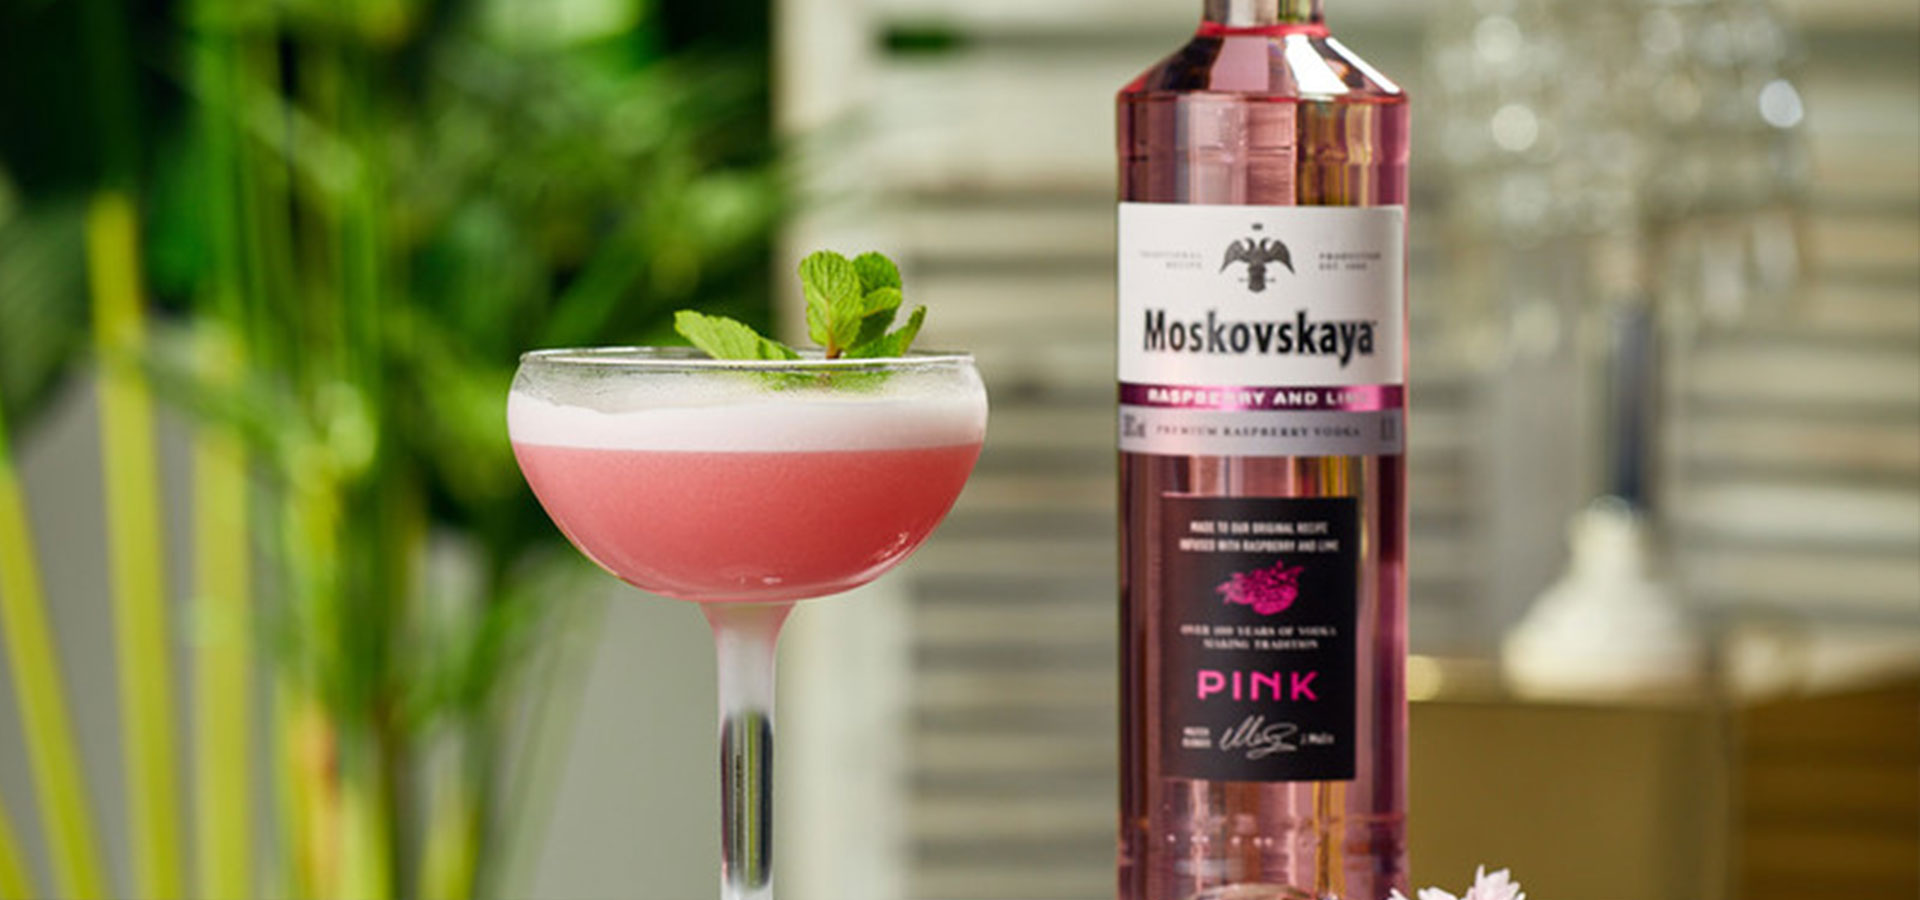 Image of Moskovskaya Vodka